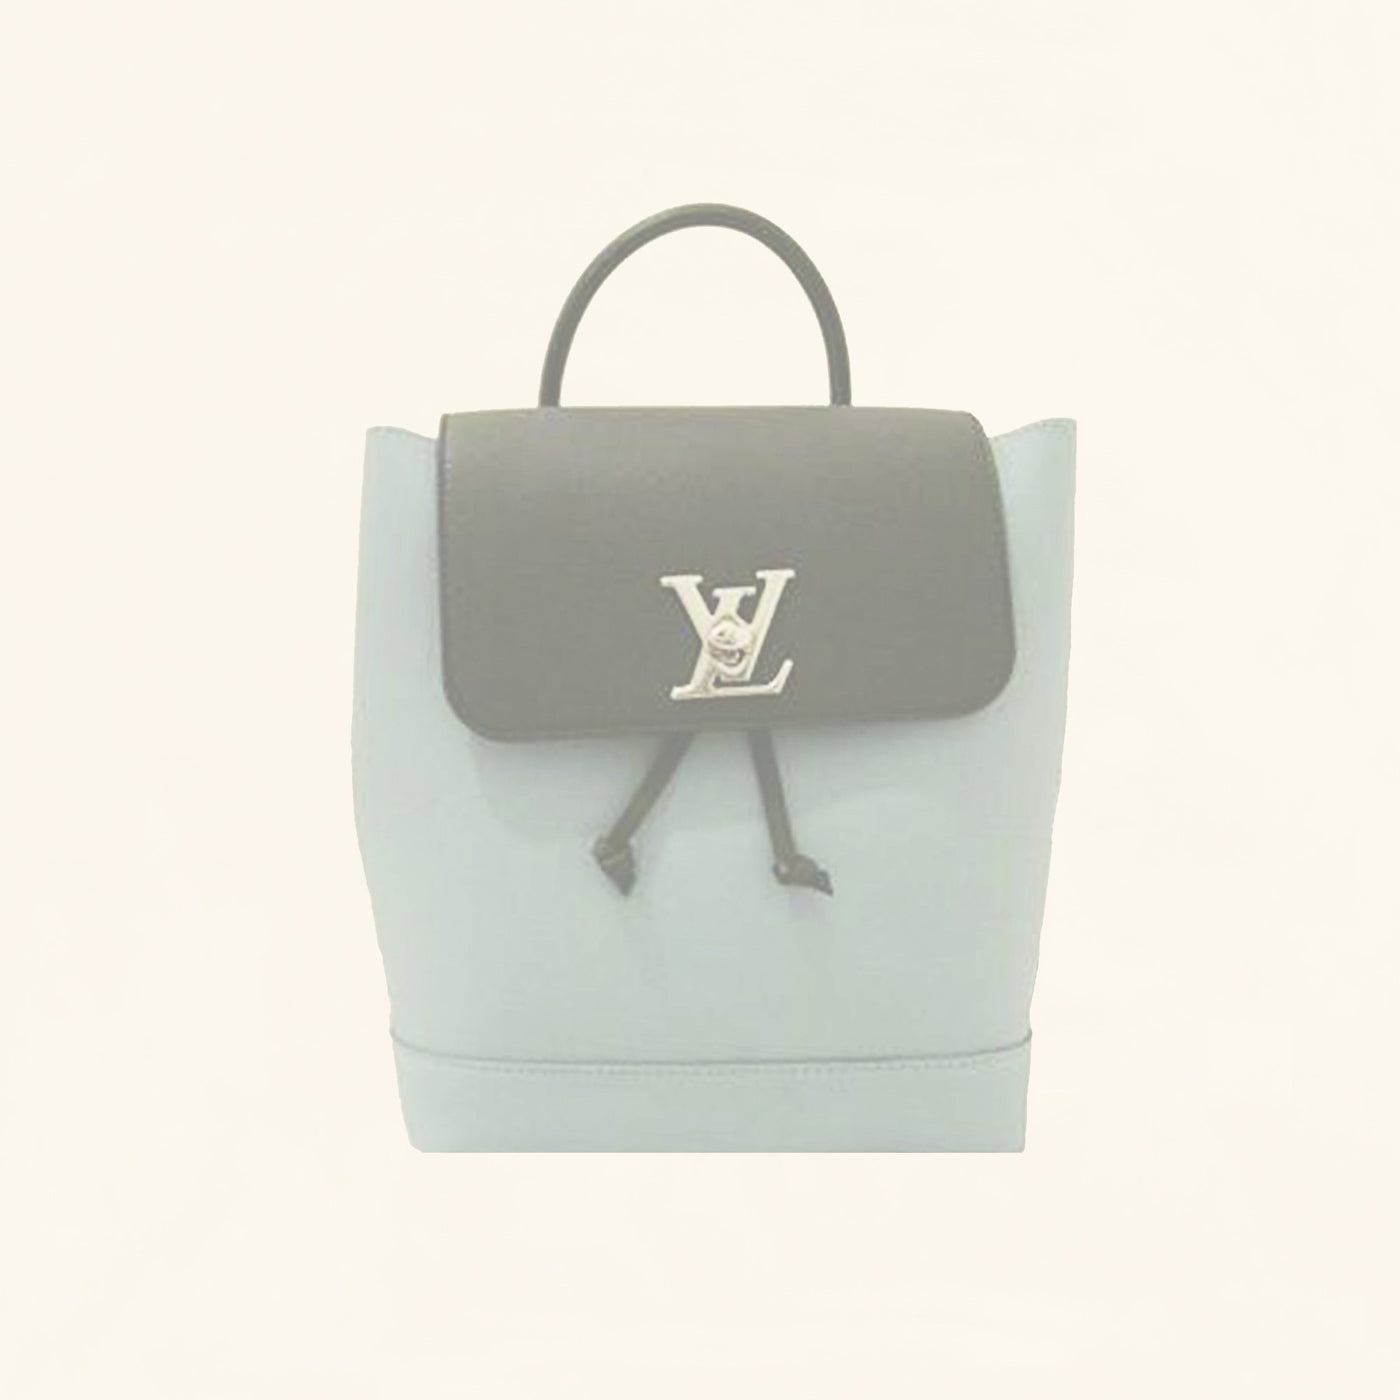 Louis Vuitton — An Eco-Responsible Collection